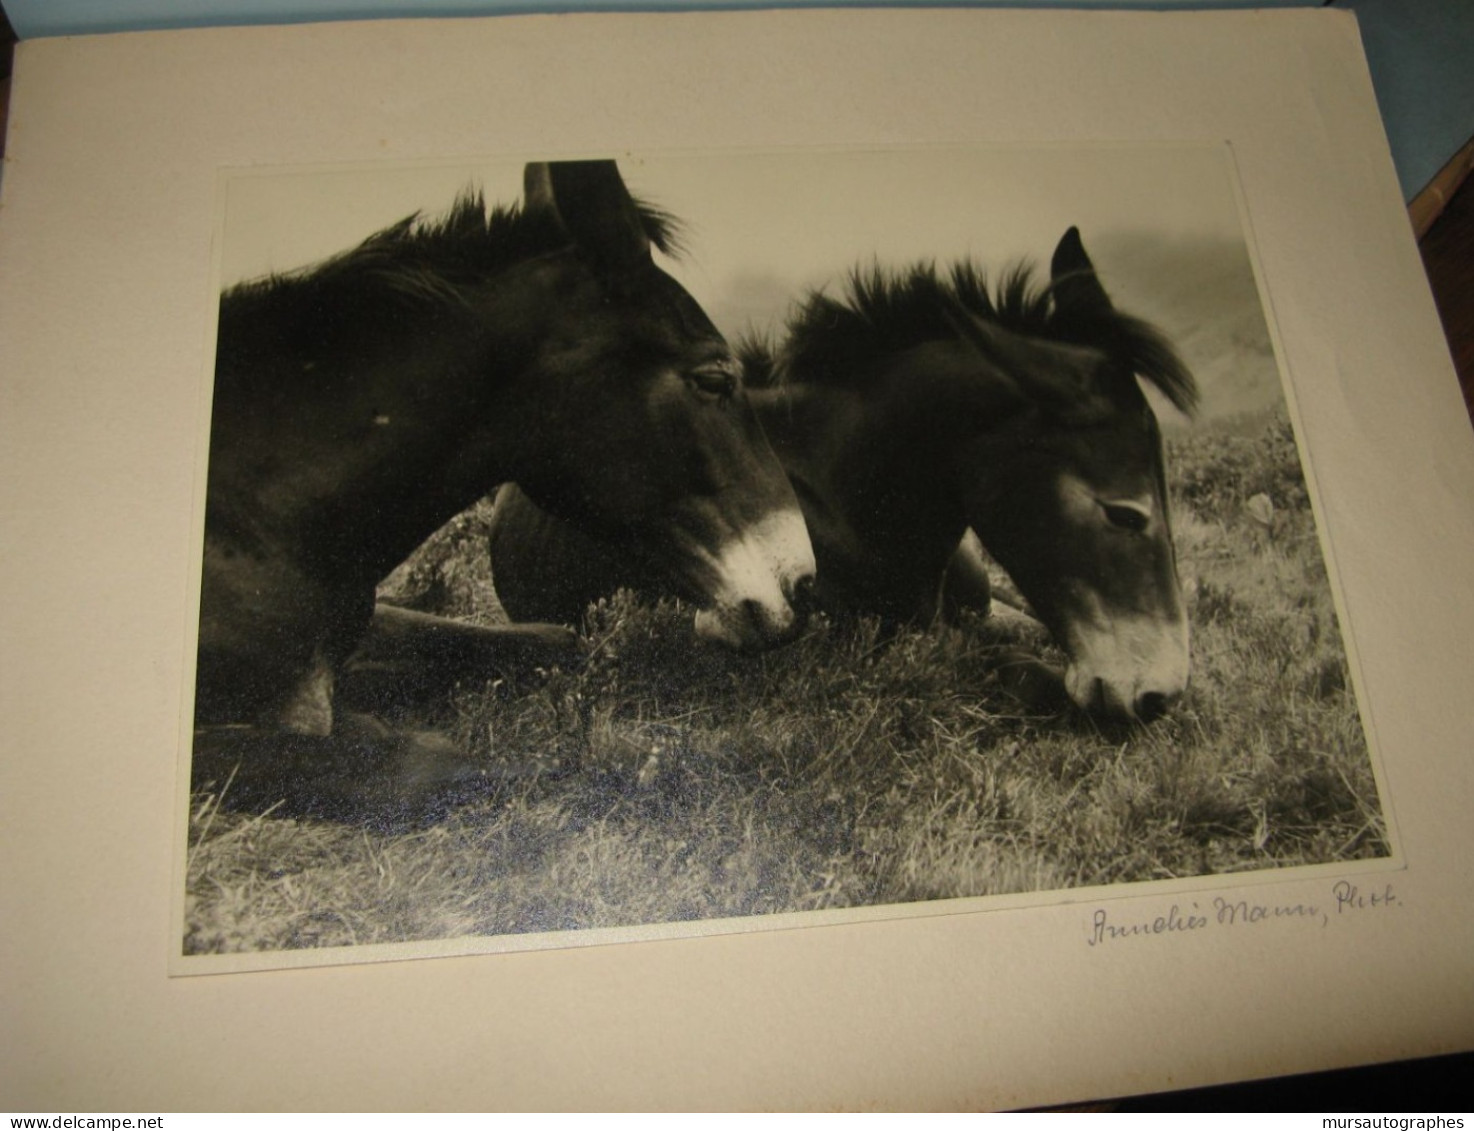 BELLE PHOTOGRAPHIE N&B "DEUX MULETS" Vers 1940-50 Signé ANNELIES MANN - Signiert